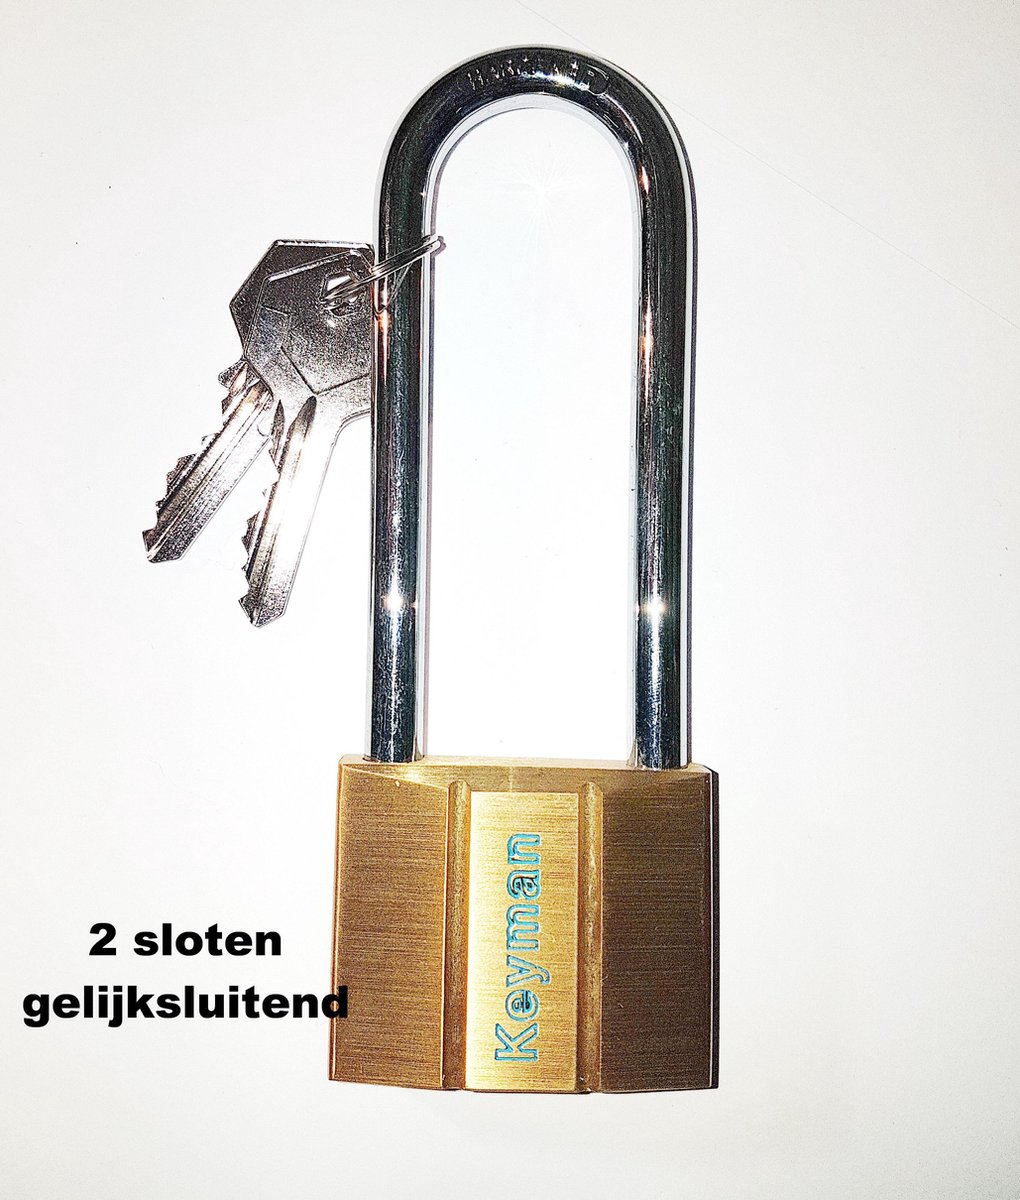 2 X Hangslot met Hoge beugel 50 mm Keyman / Yale + 2 sleutels / GELIJK SLUITEND